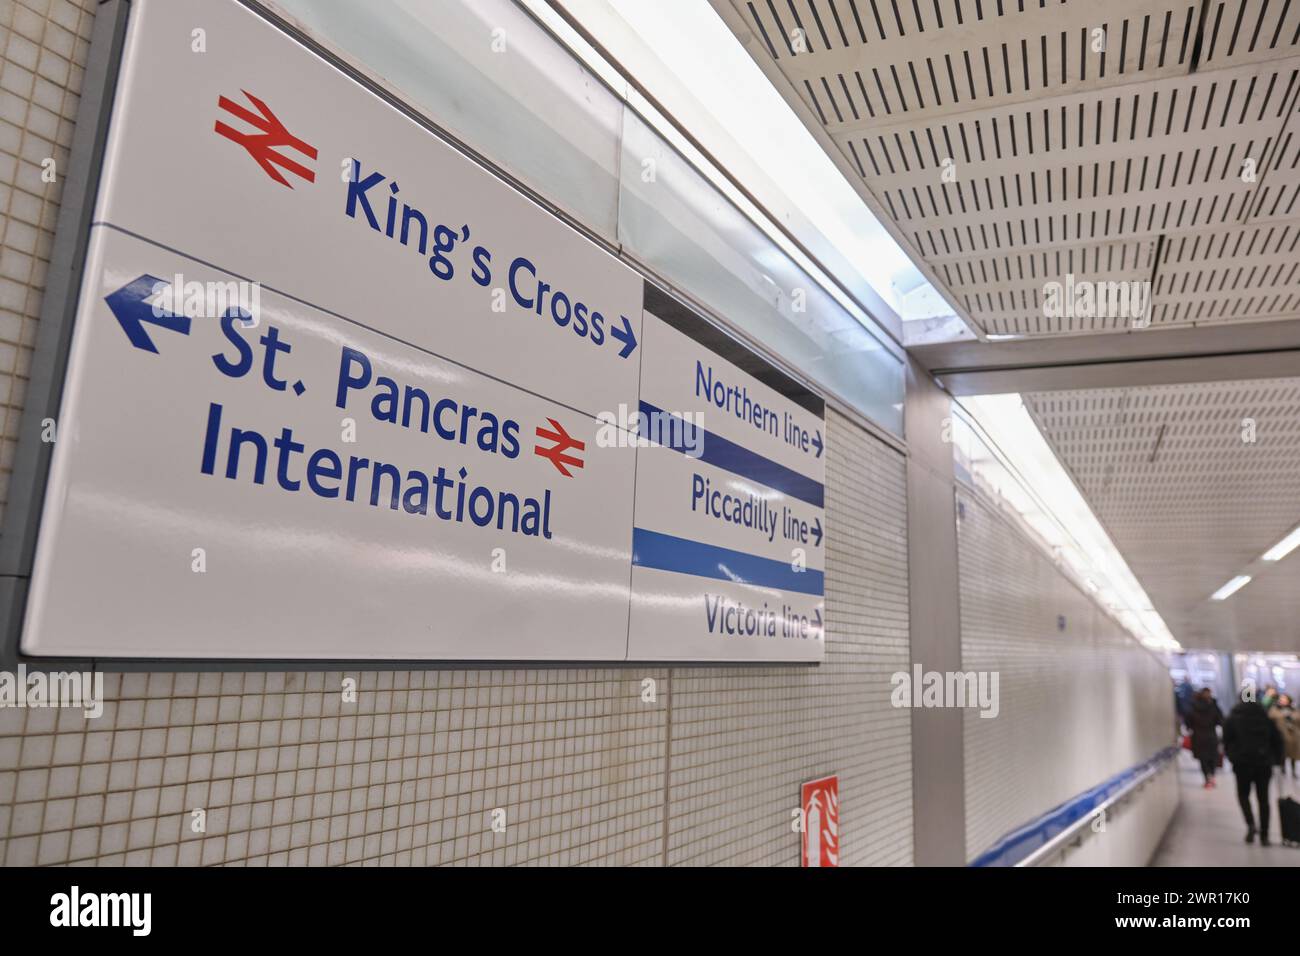 Passaggio sotterraneo e biglietteria tra King's Cross e Saint Pancras International, stazioni ferroviarie e metropolitane di Londra Foto Stock